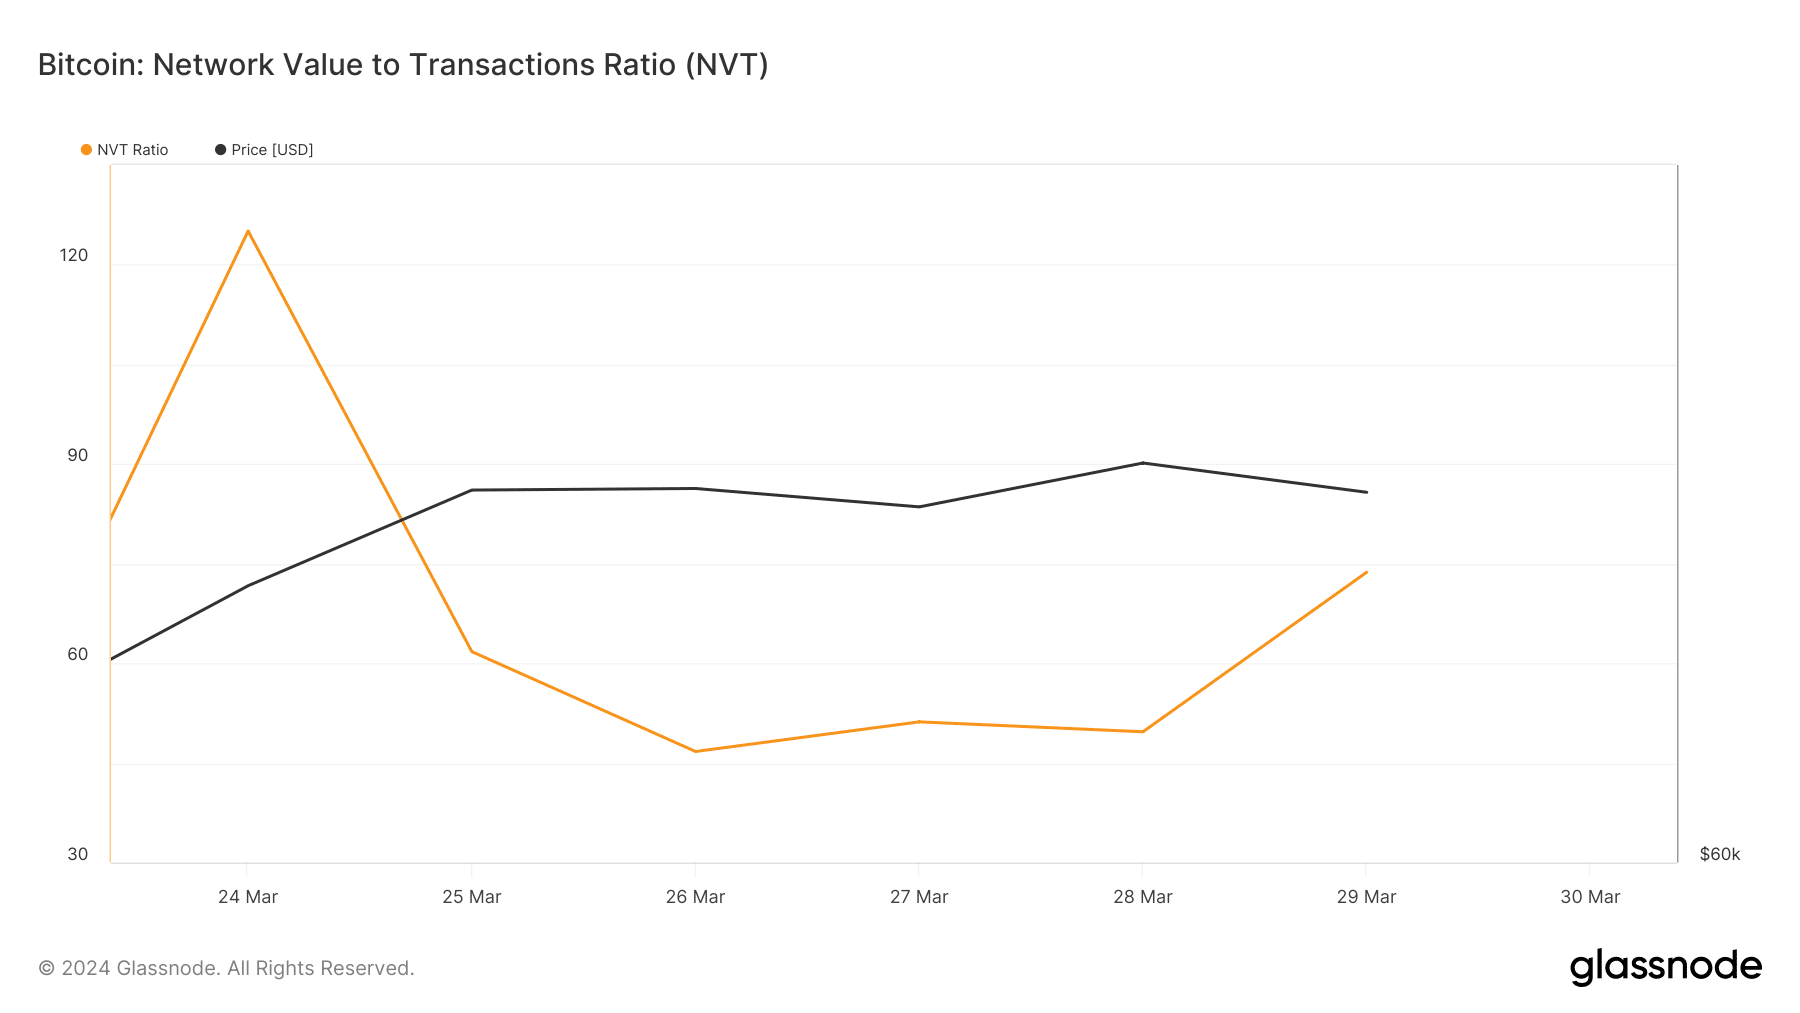 Bitcoin's NVT Ratio increased